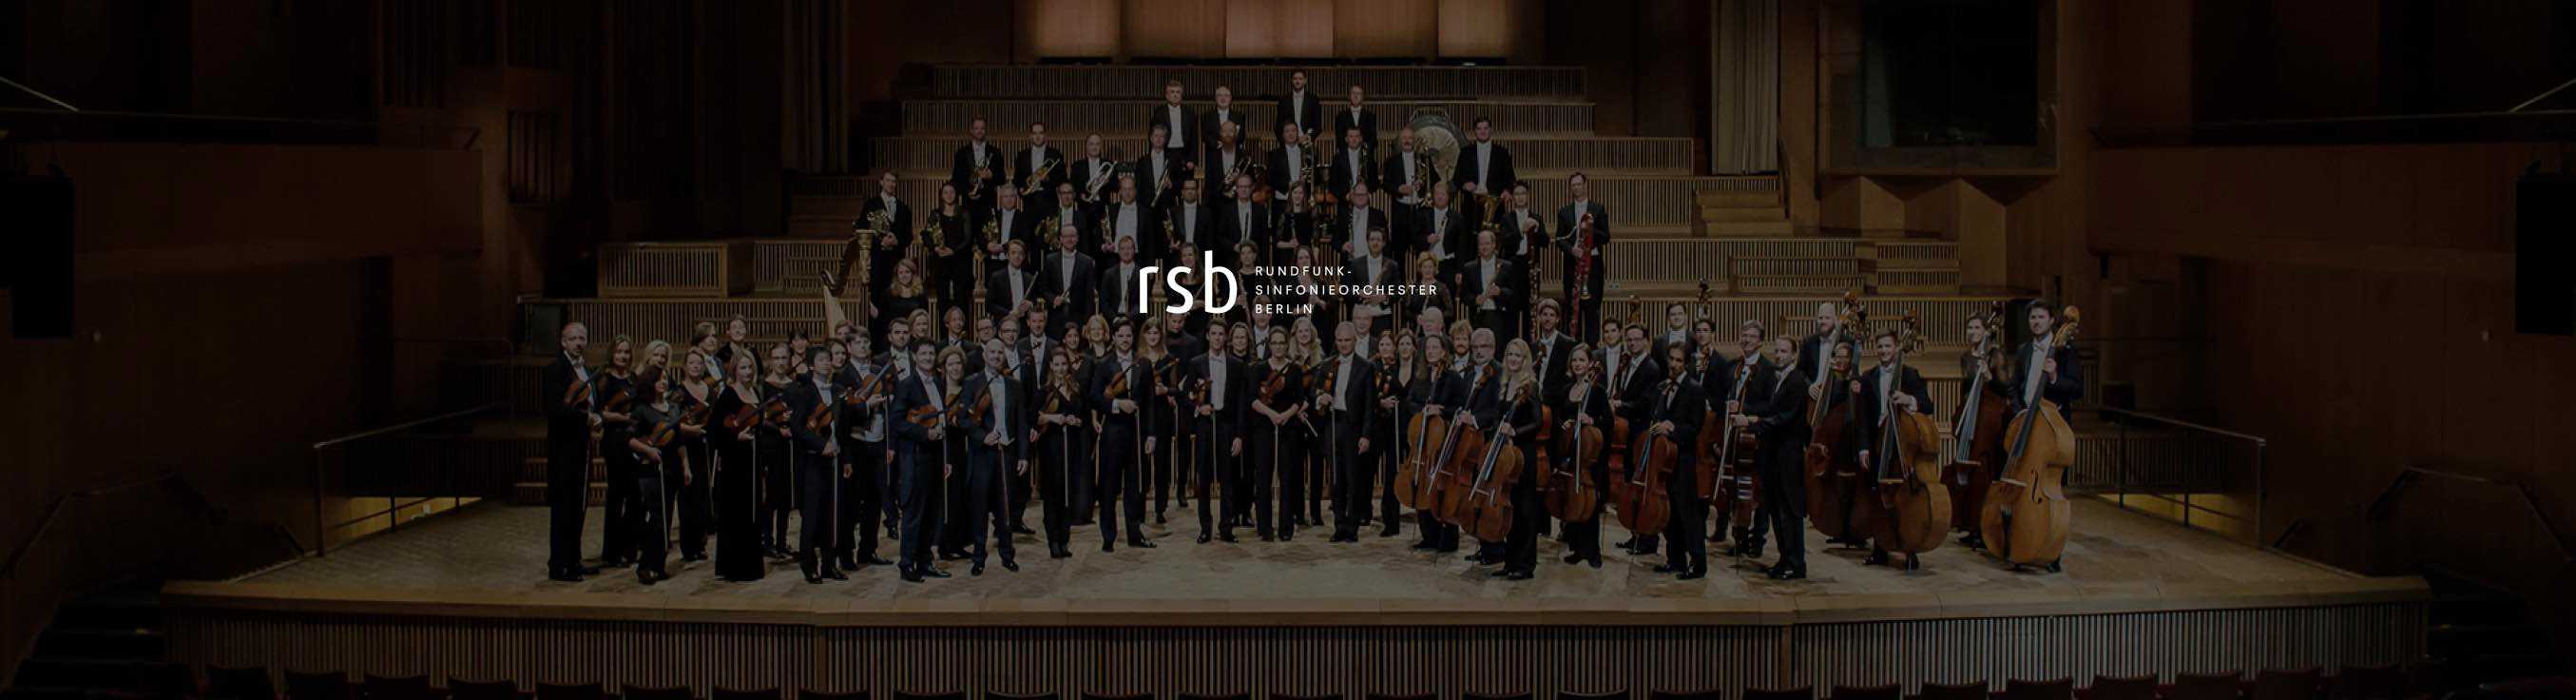 Rundfunk-Sinfonieorchester at Philharmonie Berlin